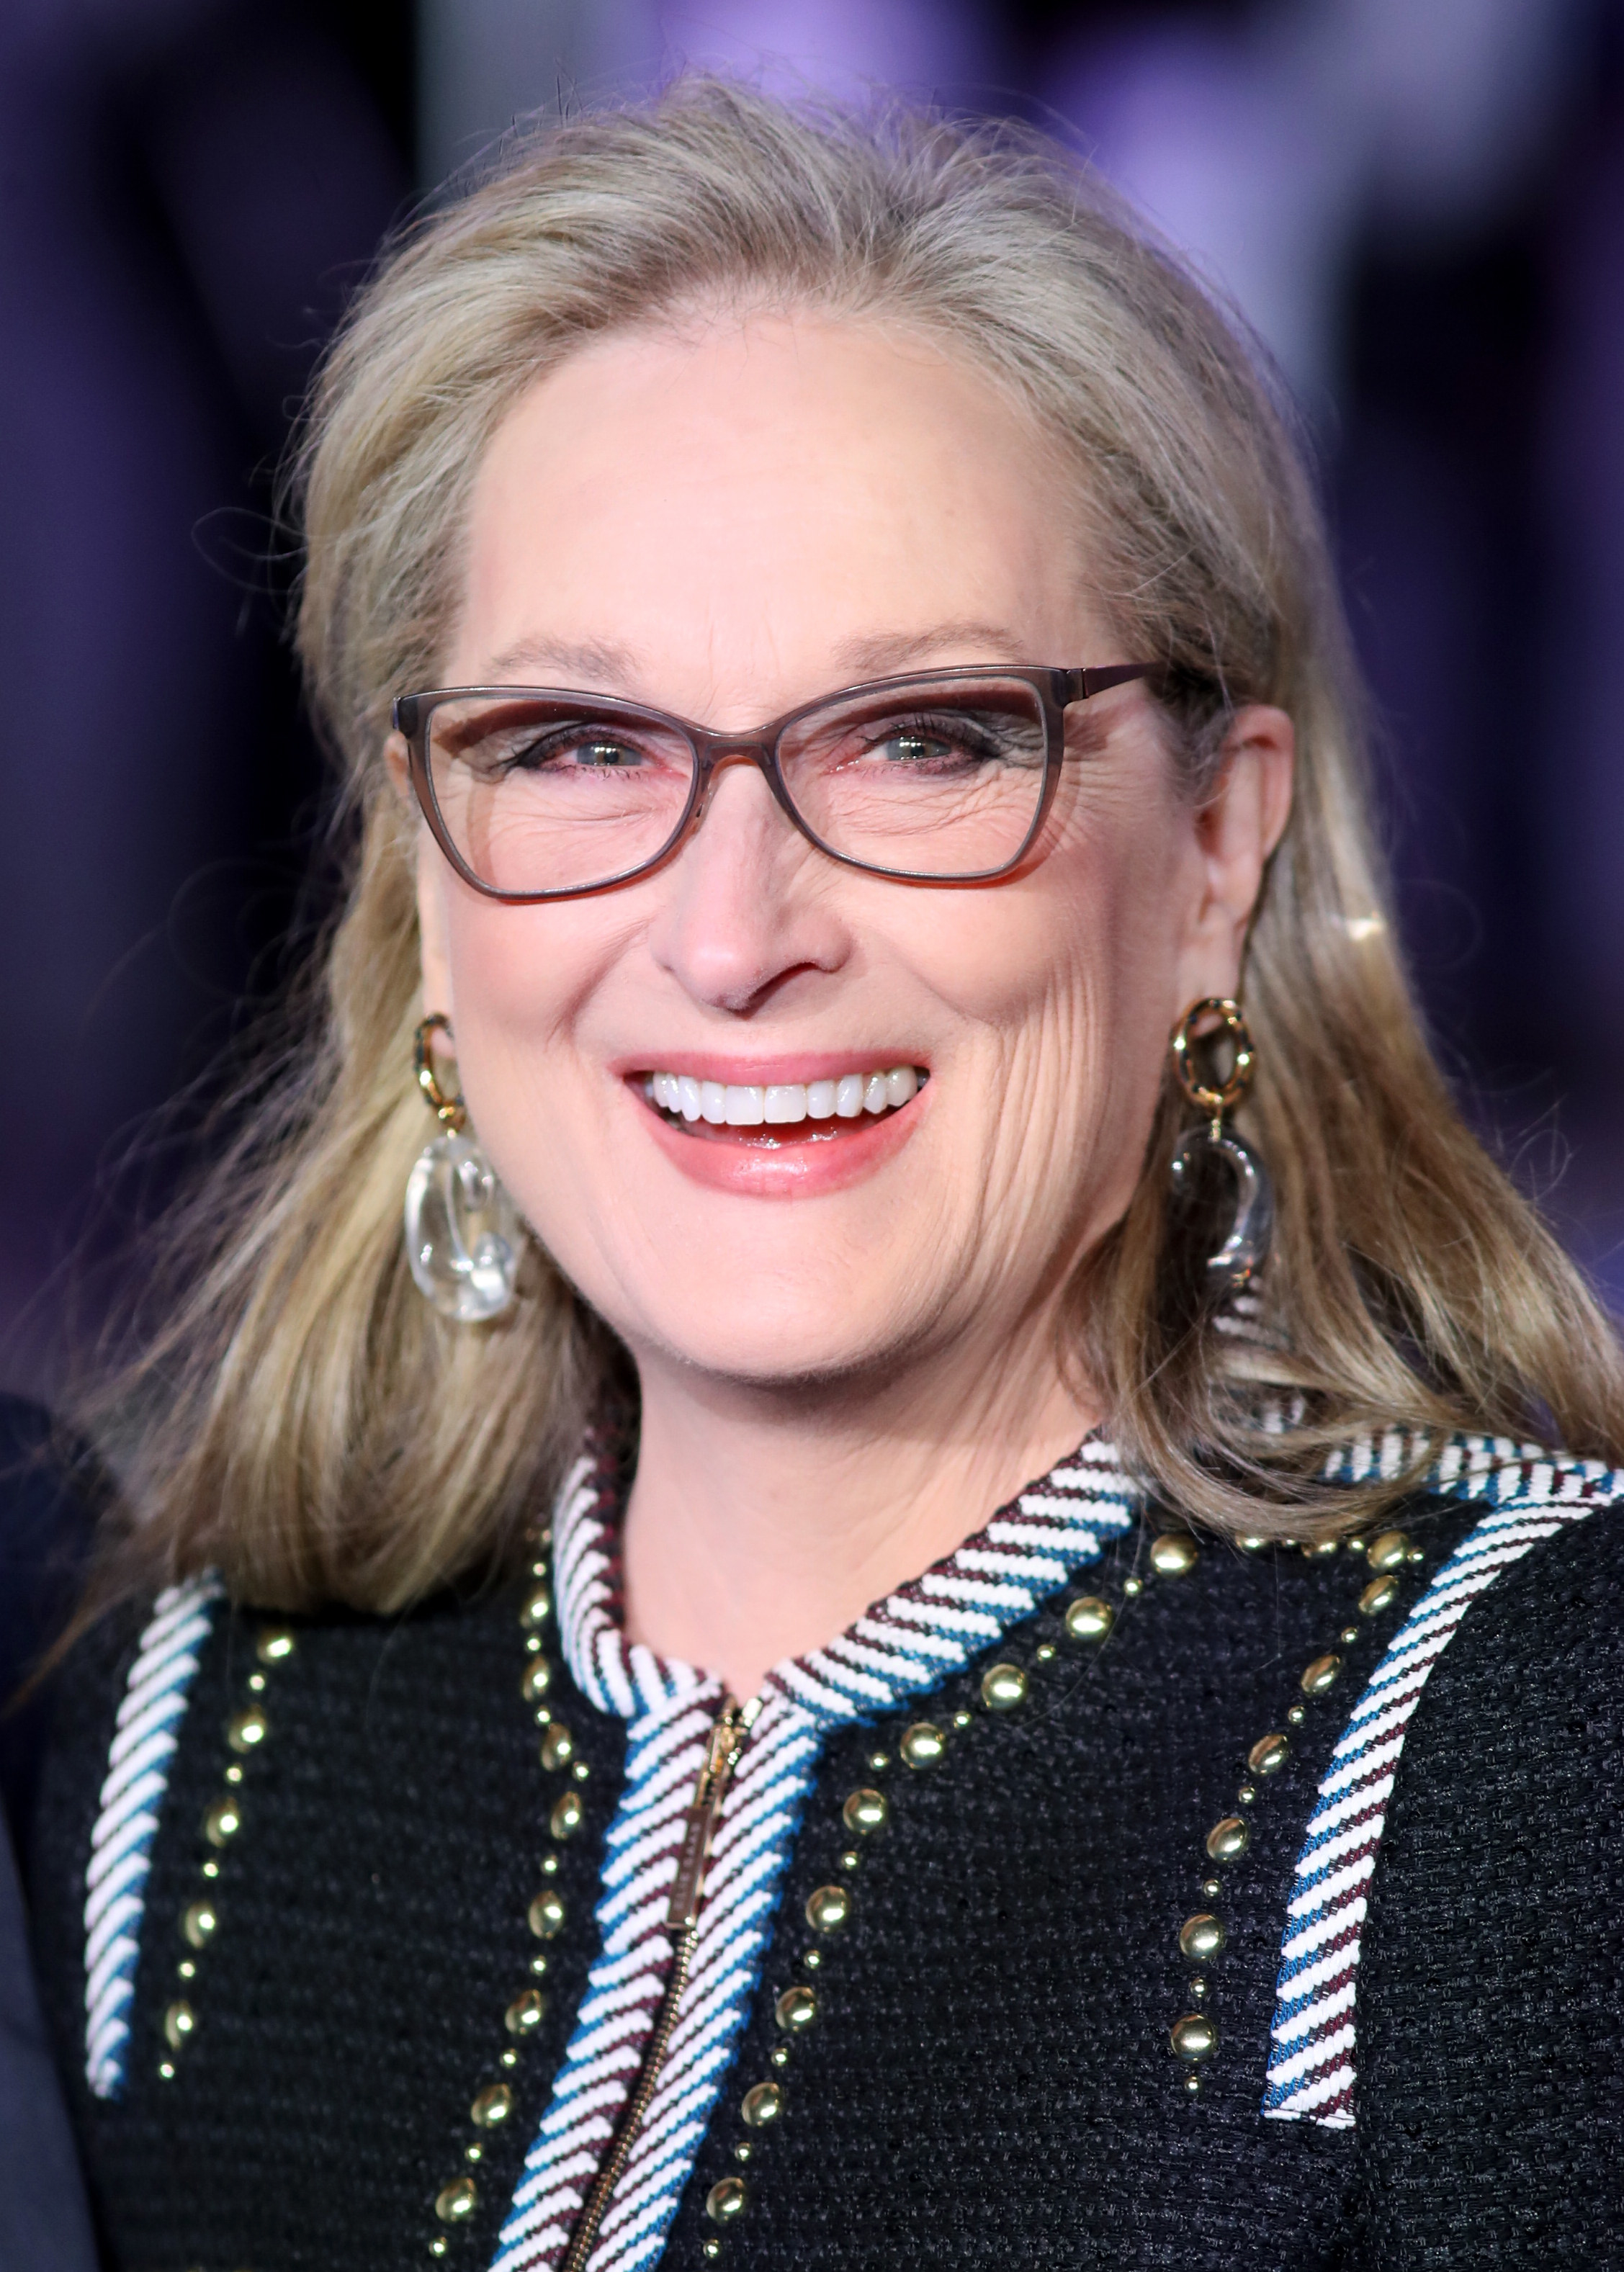 Meryl Streep laughs